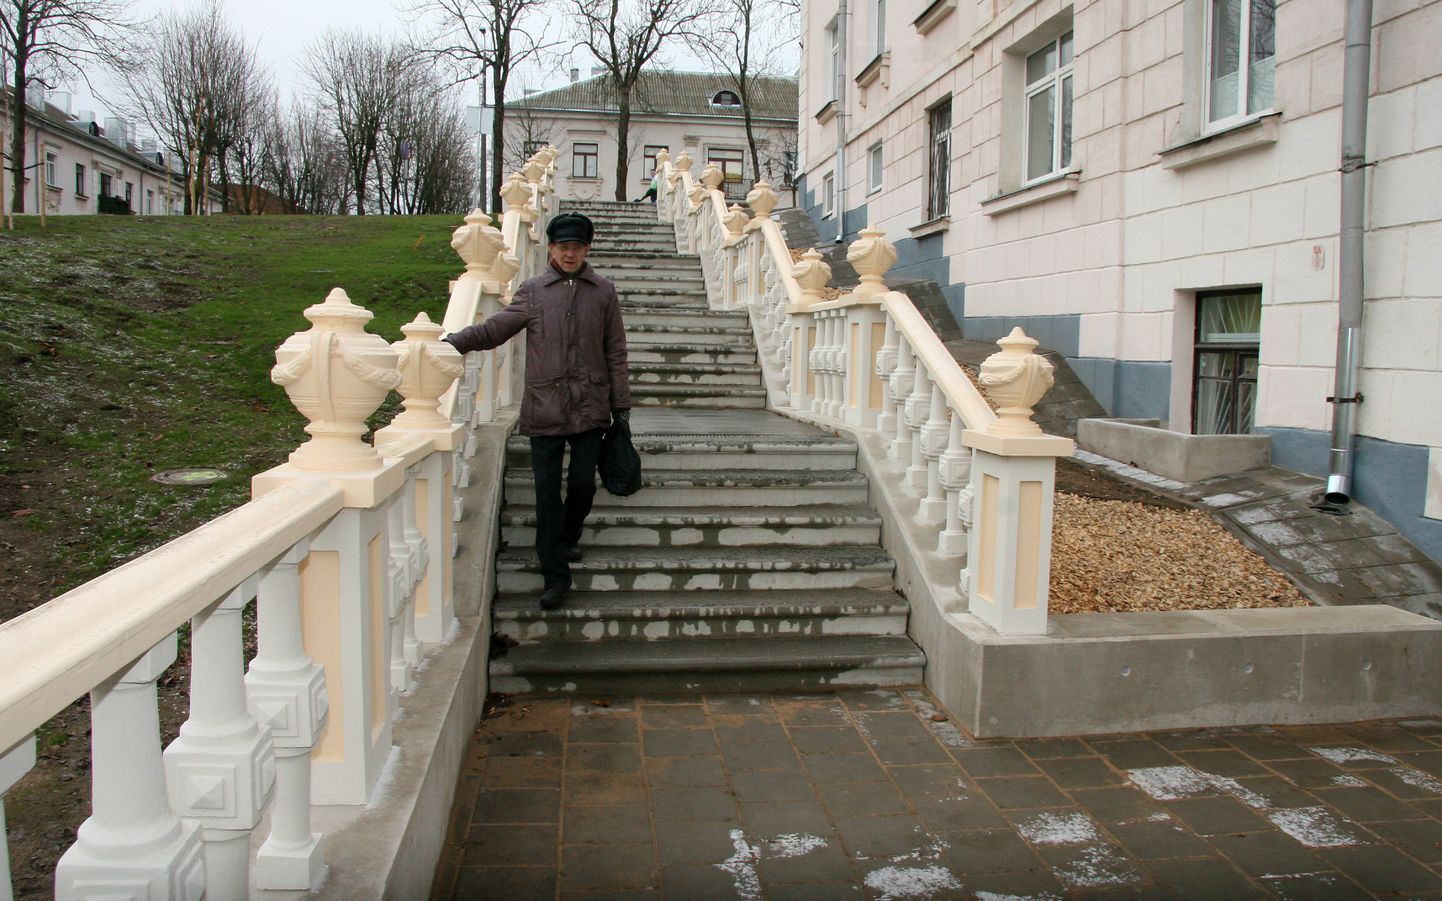 Обновленные лестницы дополнили городской архитектурный ансамбль старой части города.